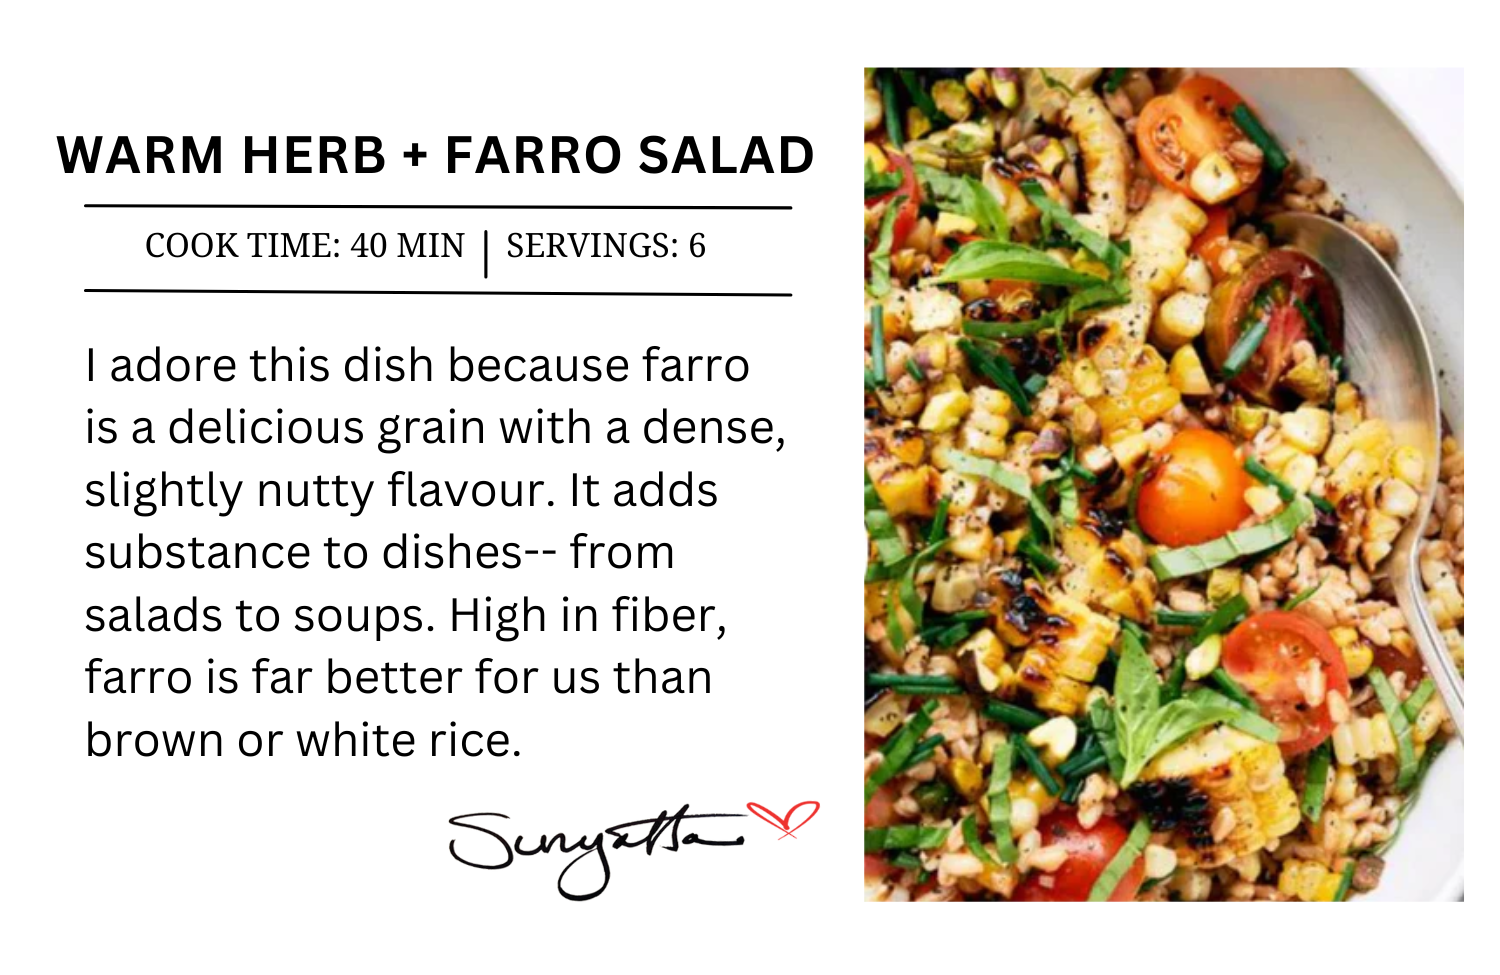 Warm Herb + Farro Salad